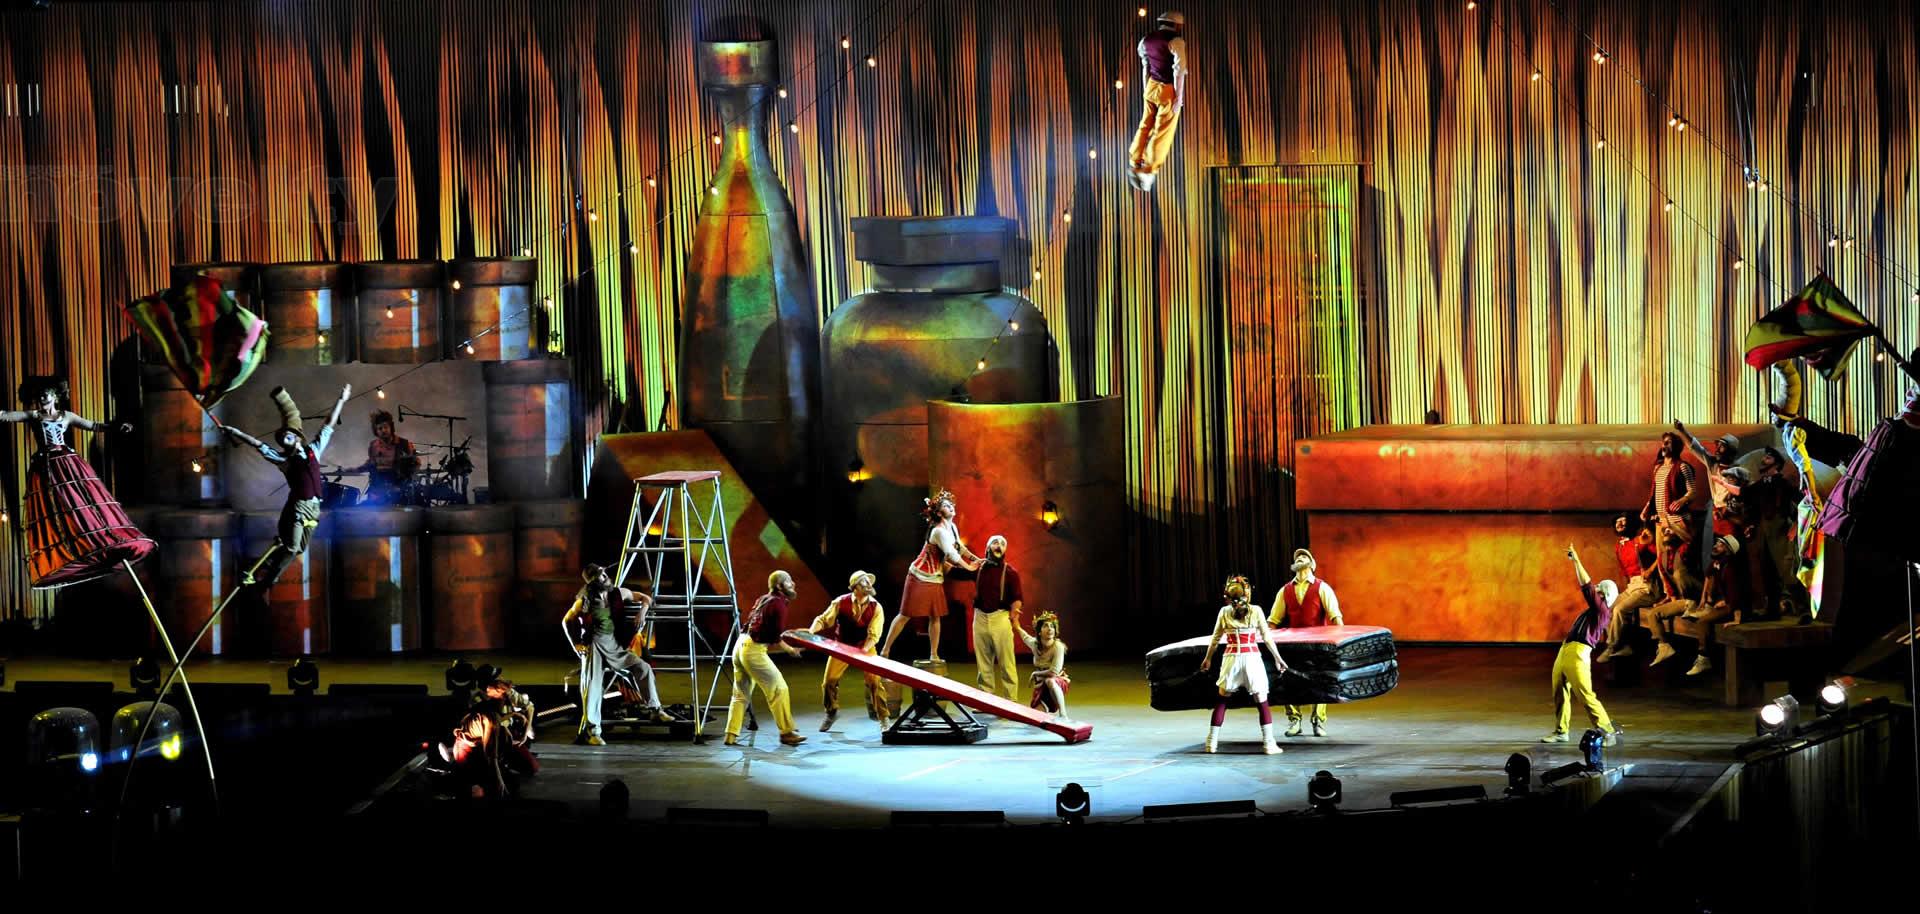 Visuel Groupe Novelty prestataire technique pour le Cirque du Soleil